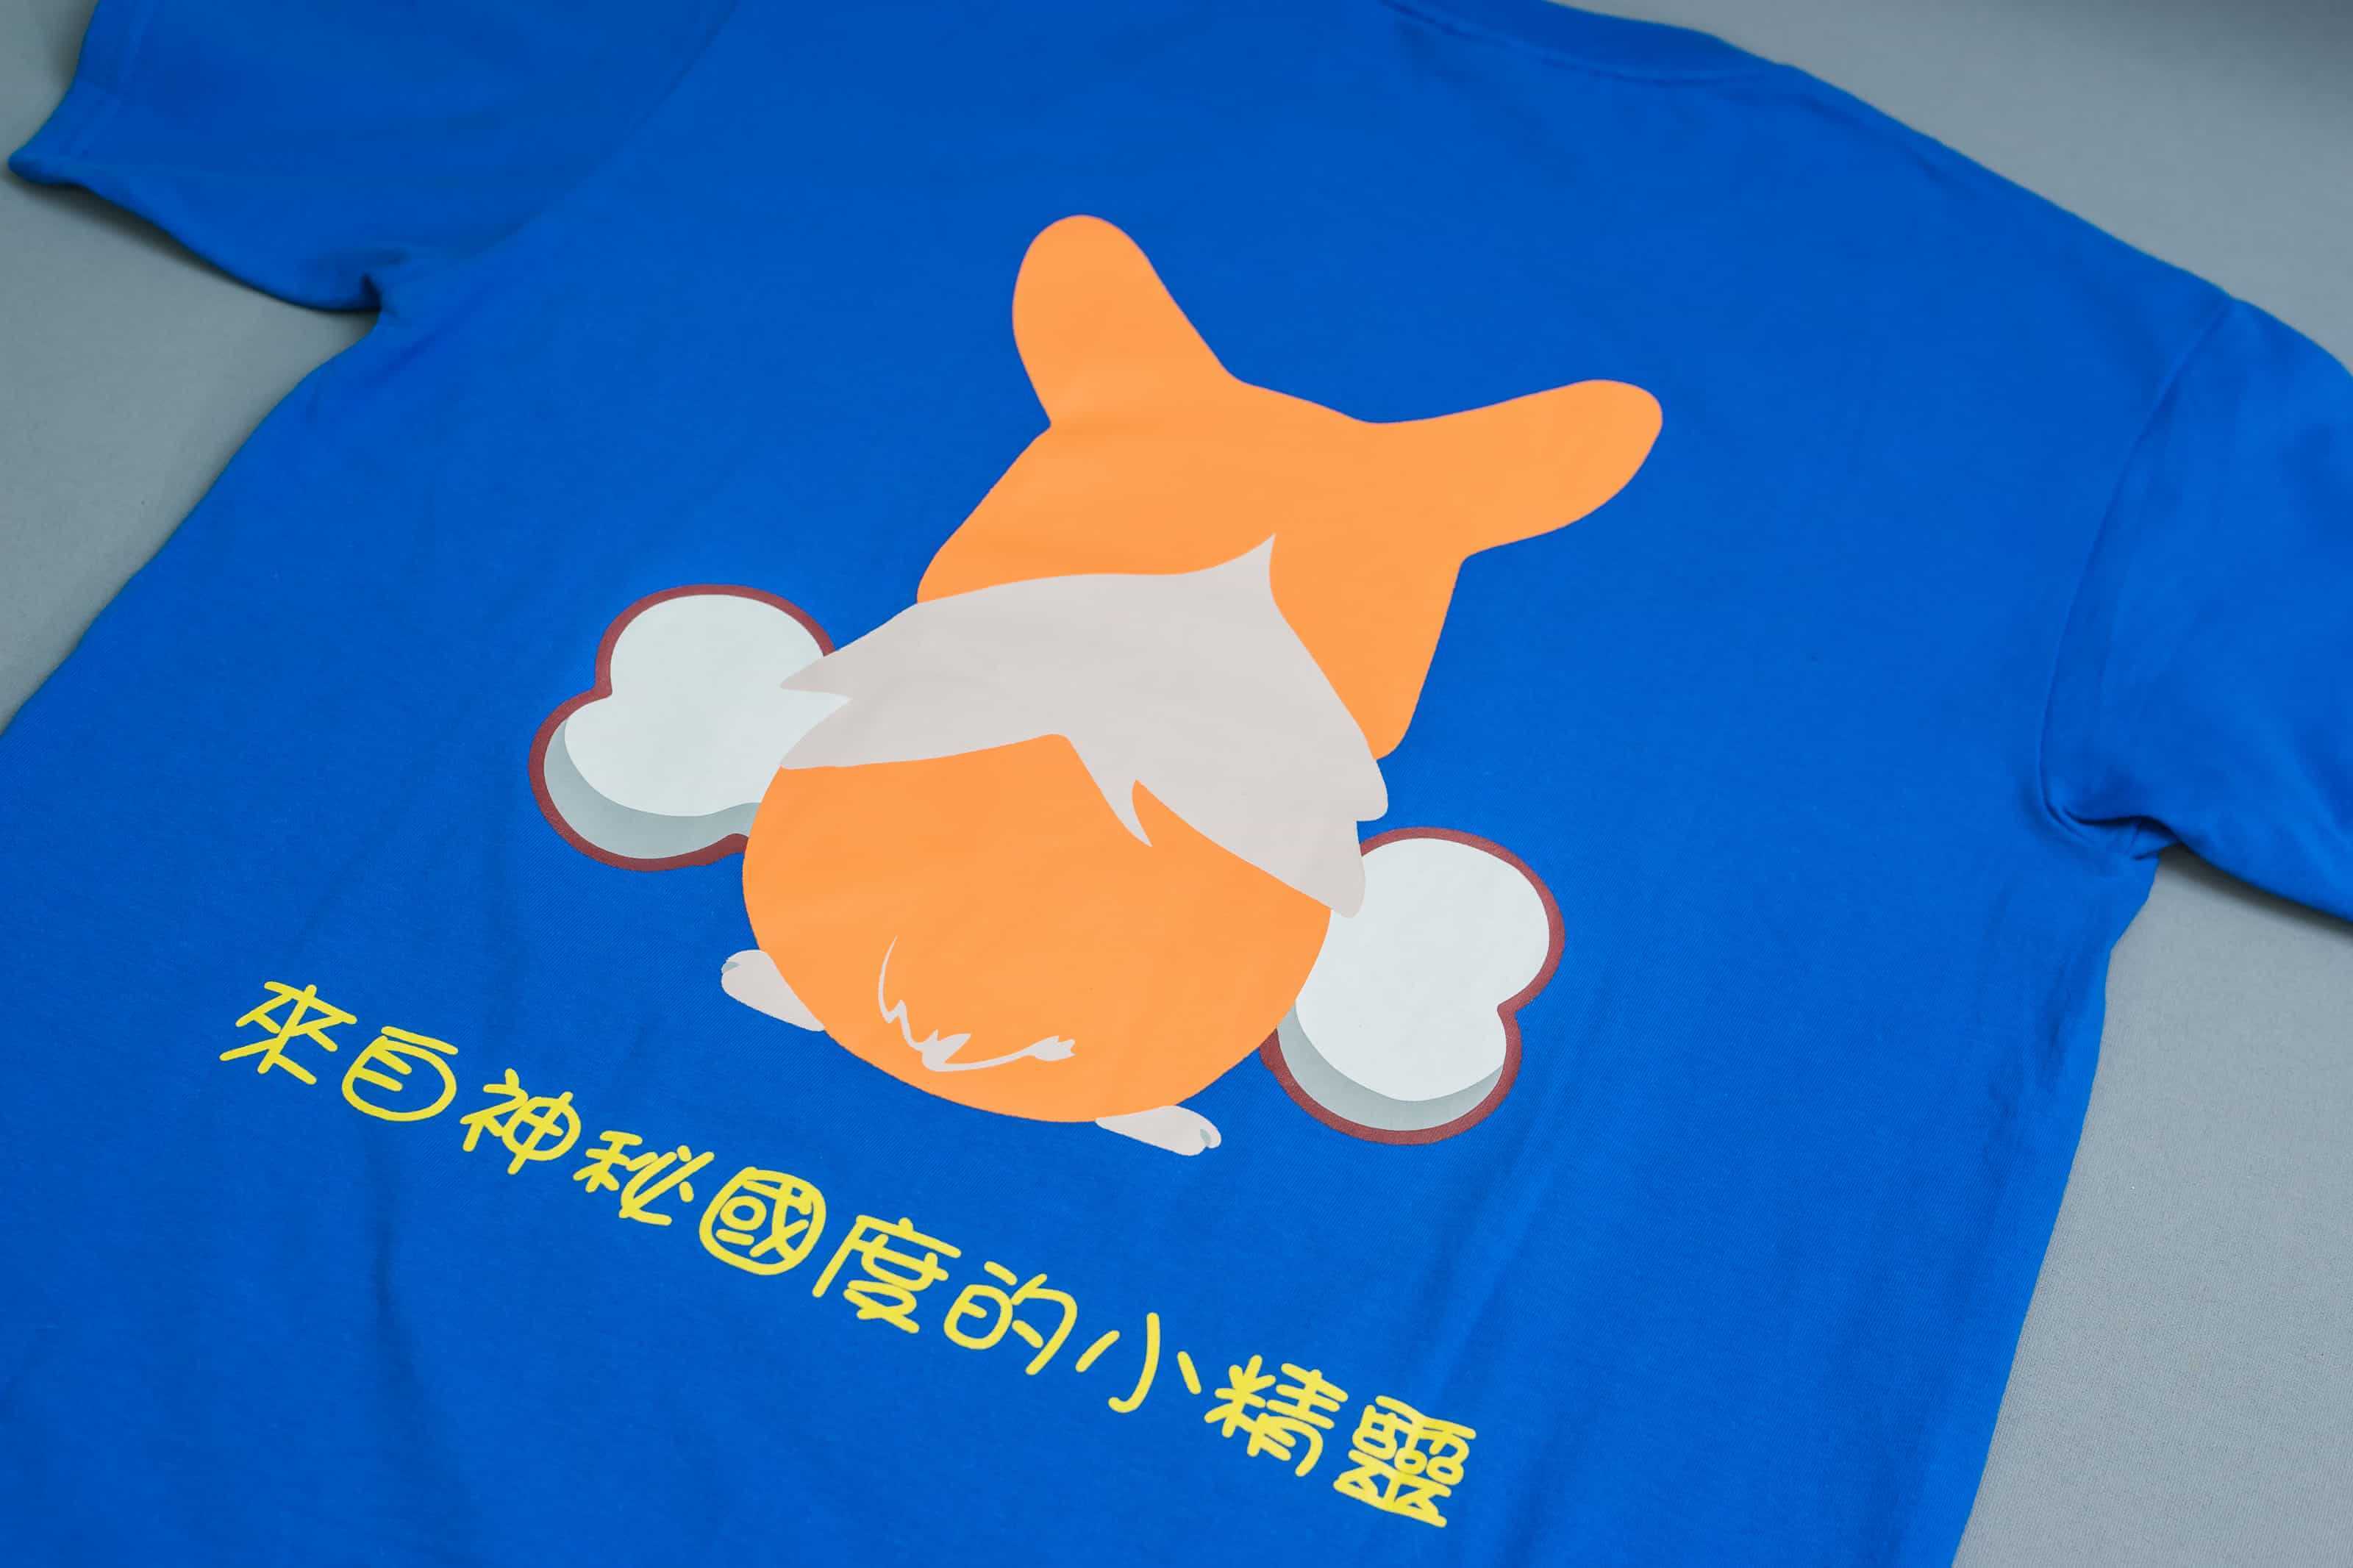 客製化T恤-CORGI 客製狗狗圖案T恤的第2張圖(客製化公司制服、班服製作、團體服製作等示意或作品圖)